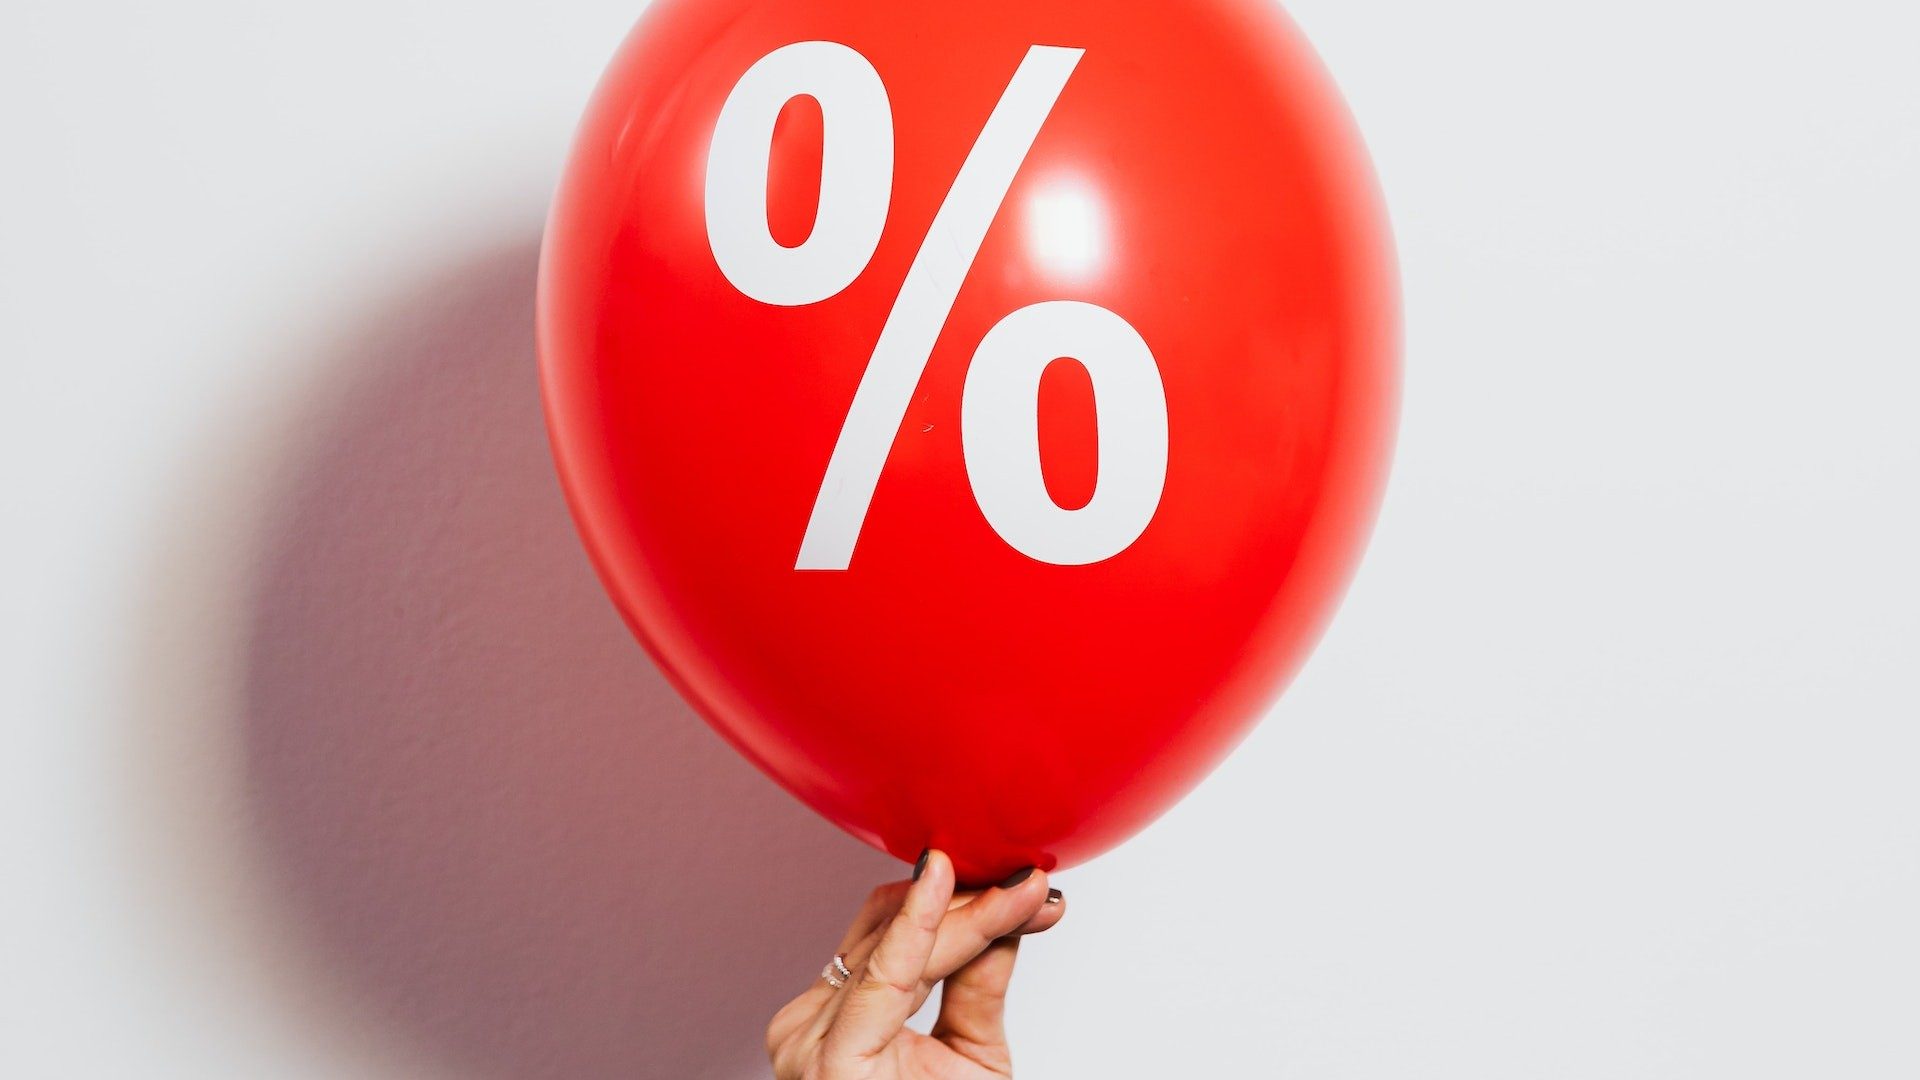 Eine Person hält einen roten Ballon mit großem Prozent-Zeichen